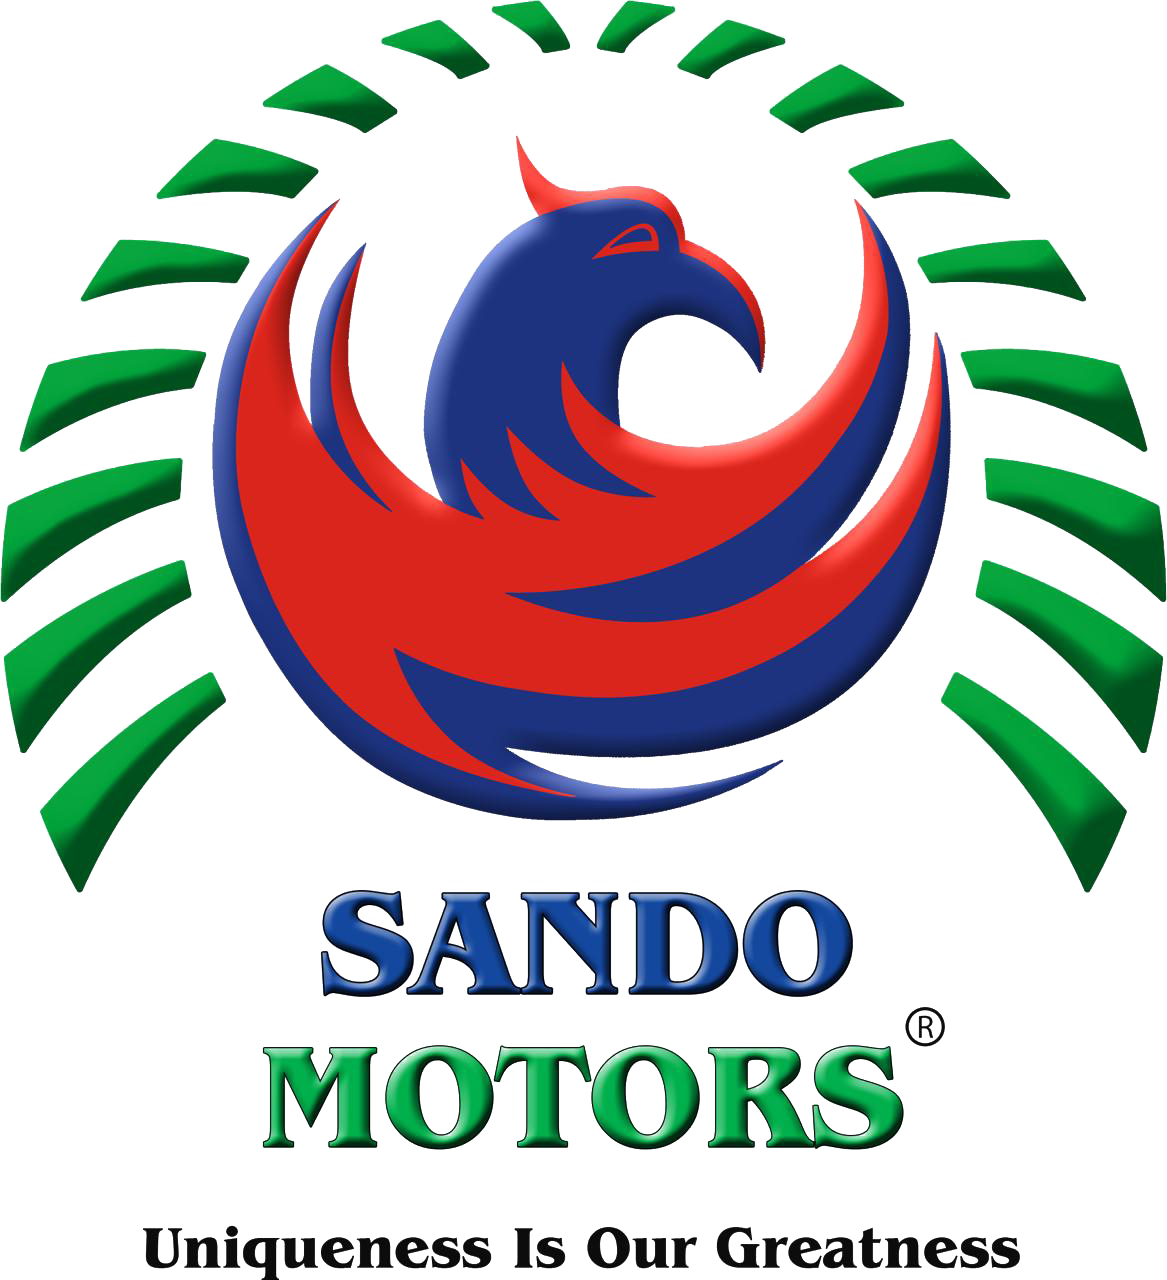 Sando Motors